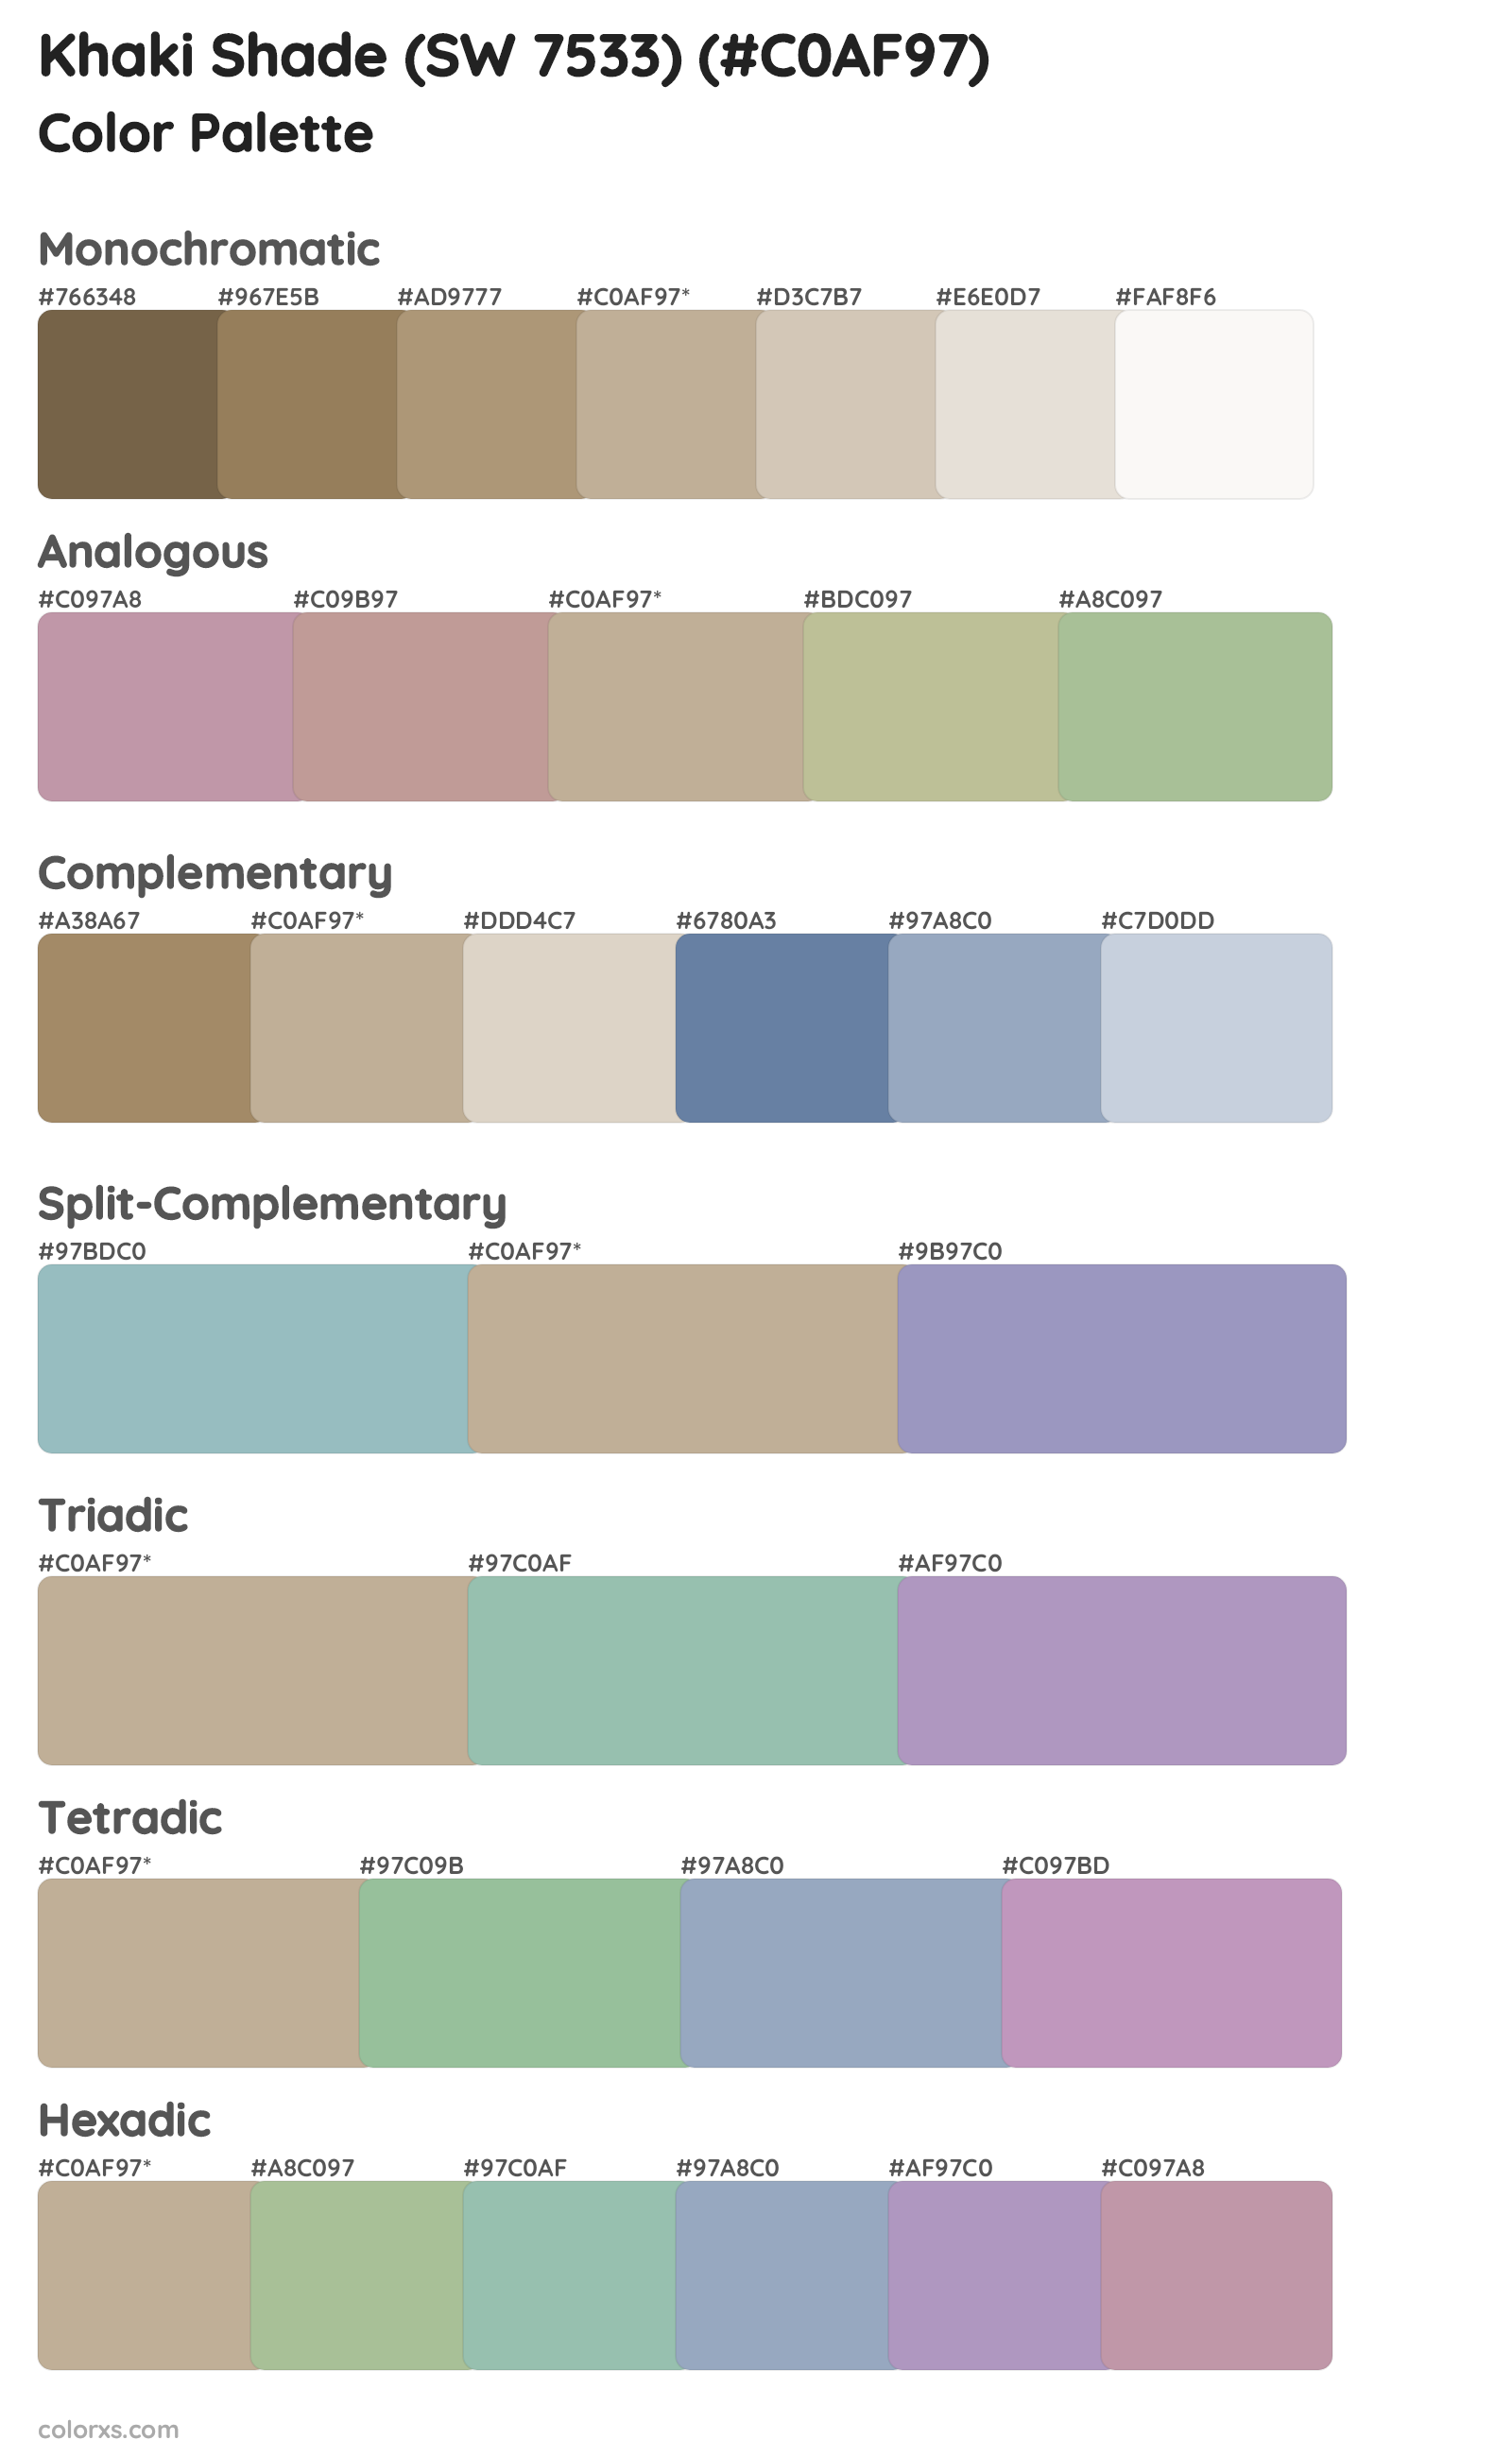 Khaki Shade (SW 7533) Color Scheme Palettes